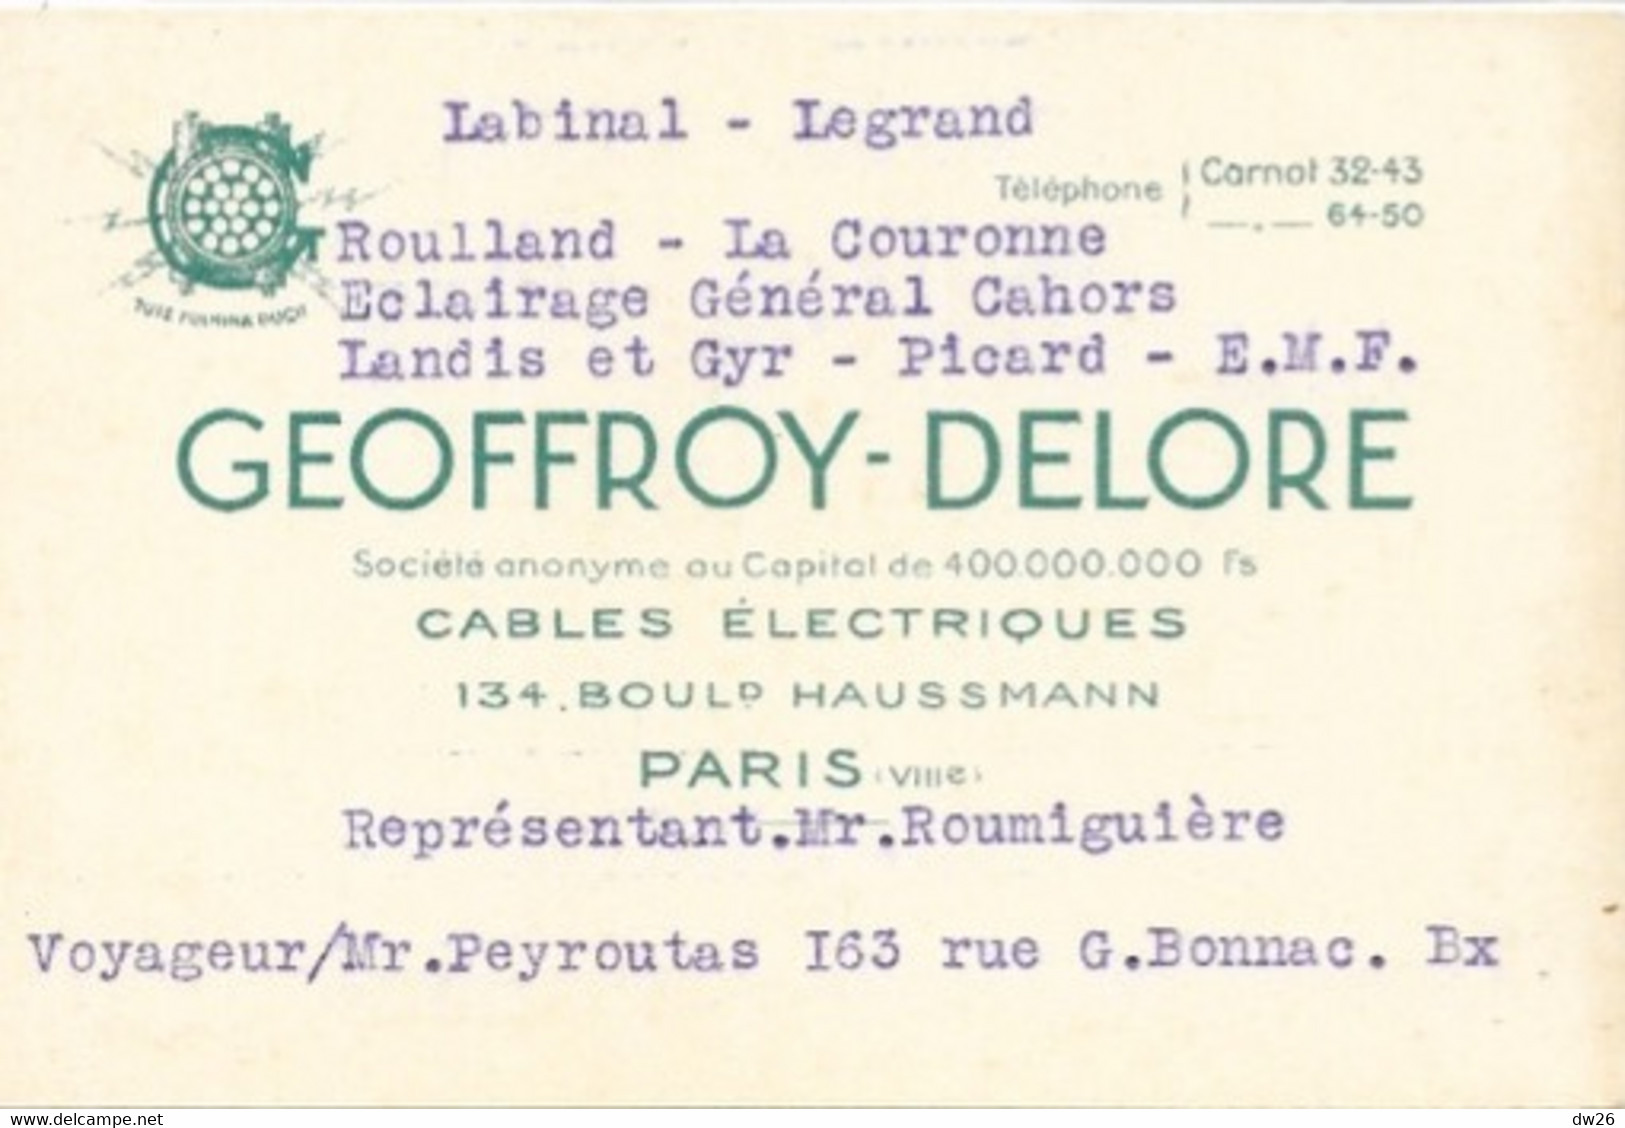 Carte De Représentant (M. Roumiguière) Cables Electriques Geoffroy-Delore, Boulevard Haussmann, Paris - Visitenkarten